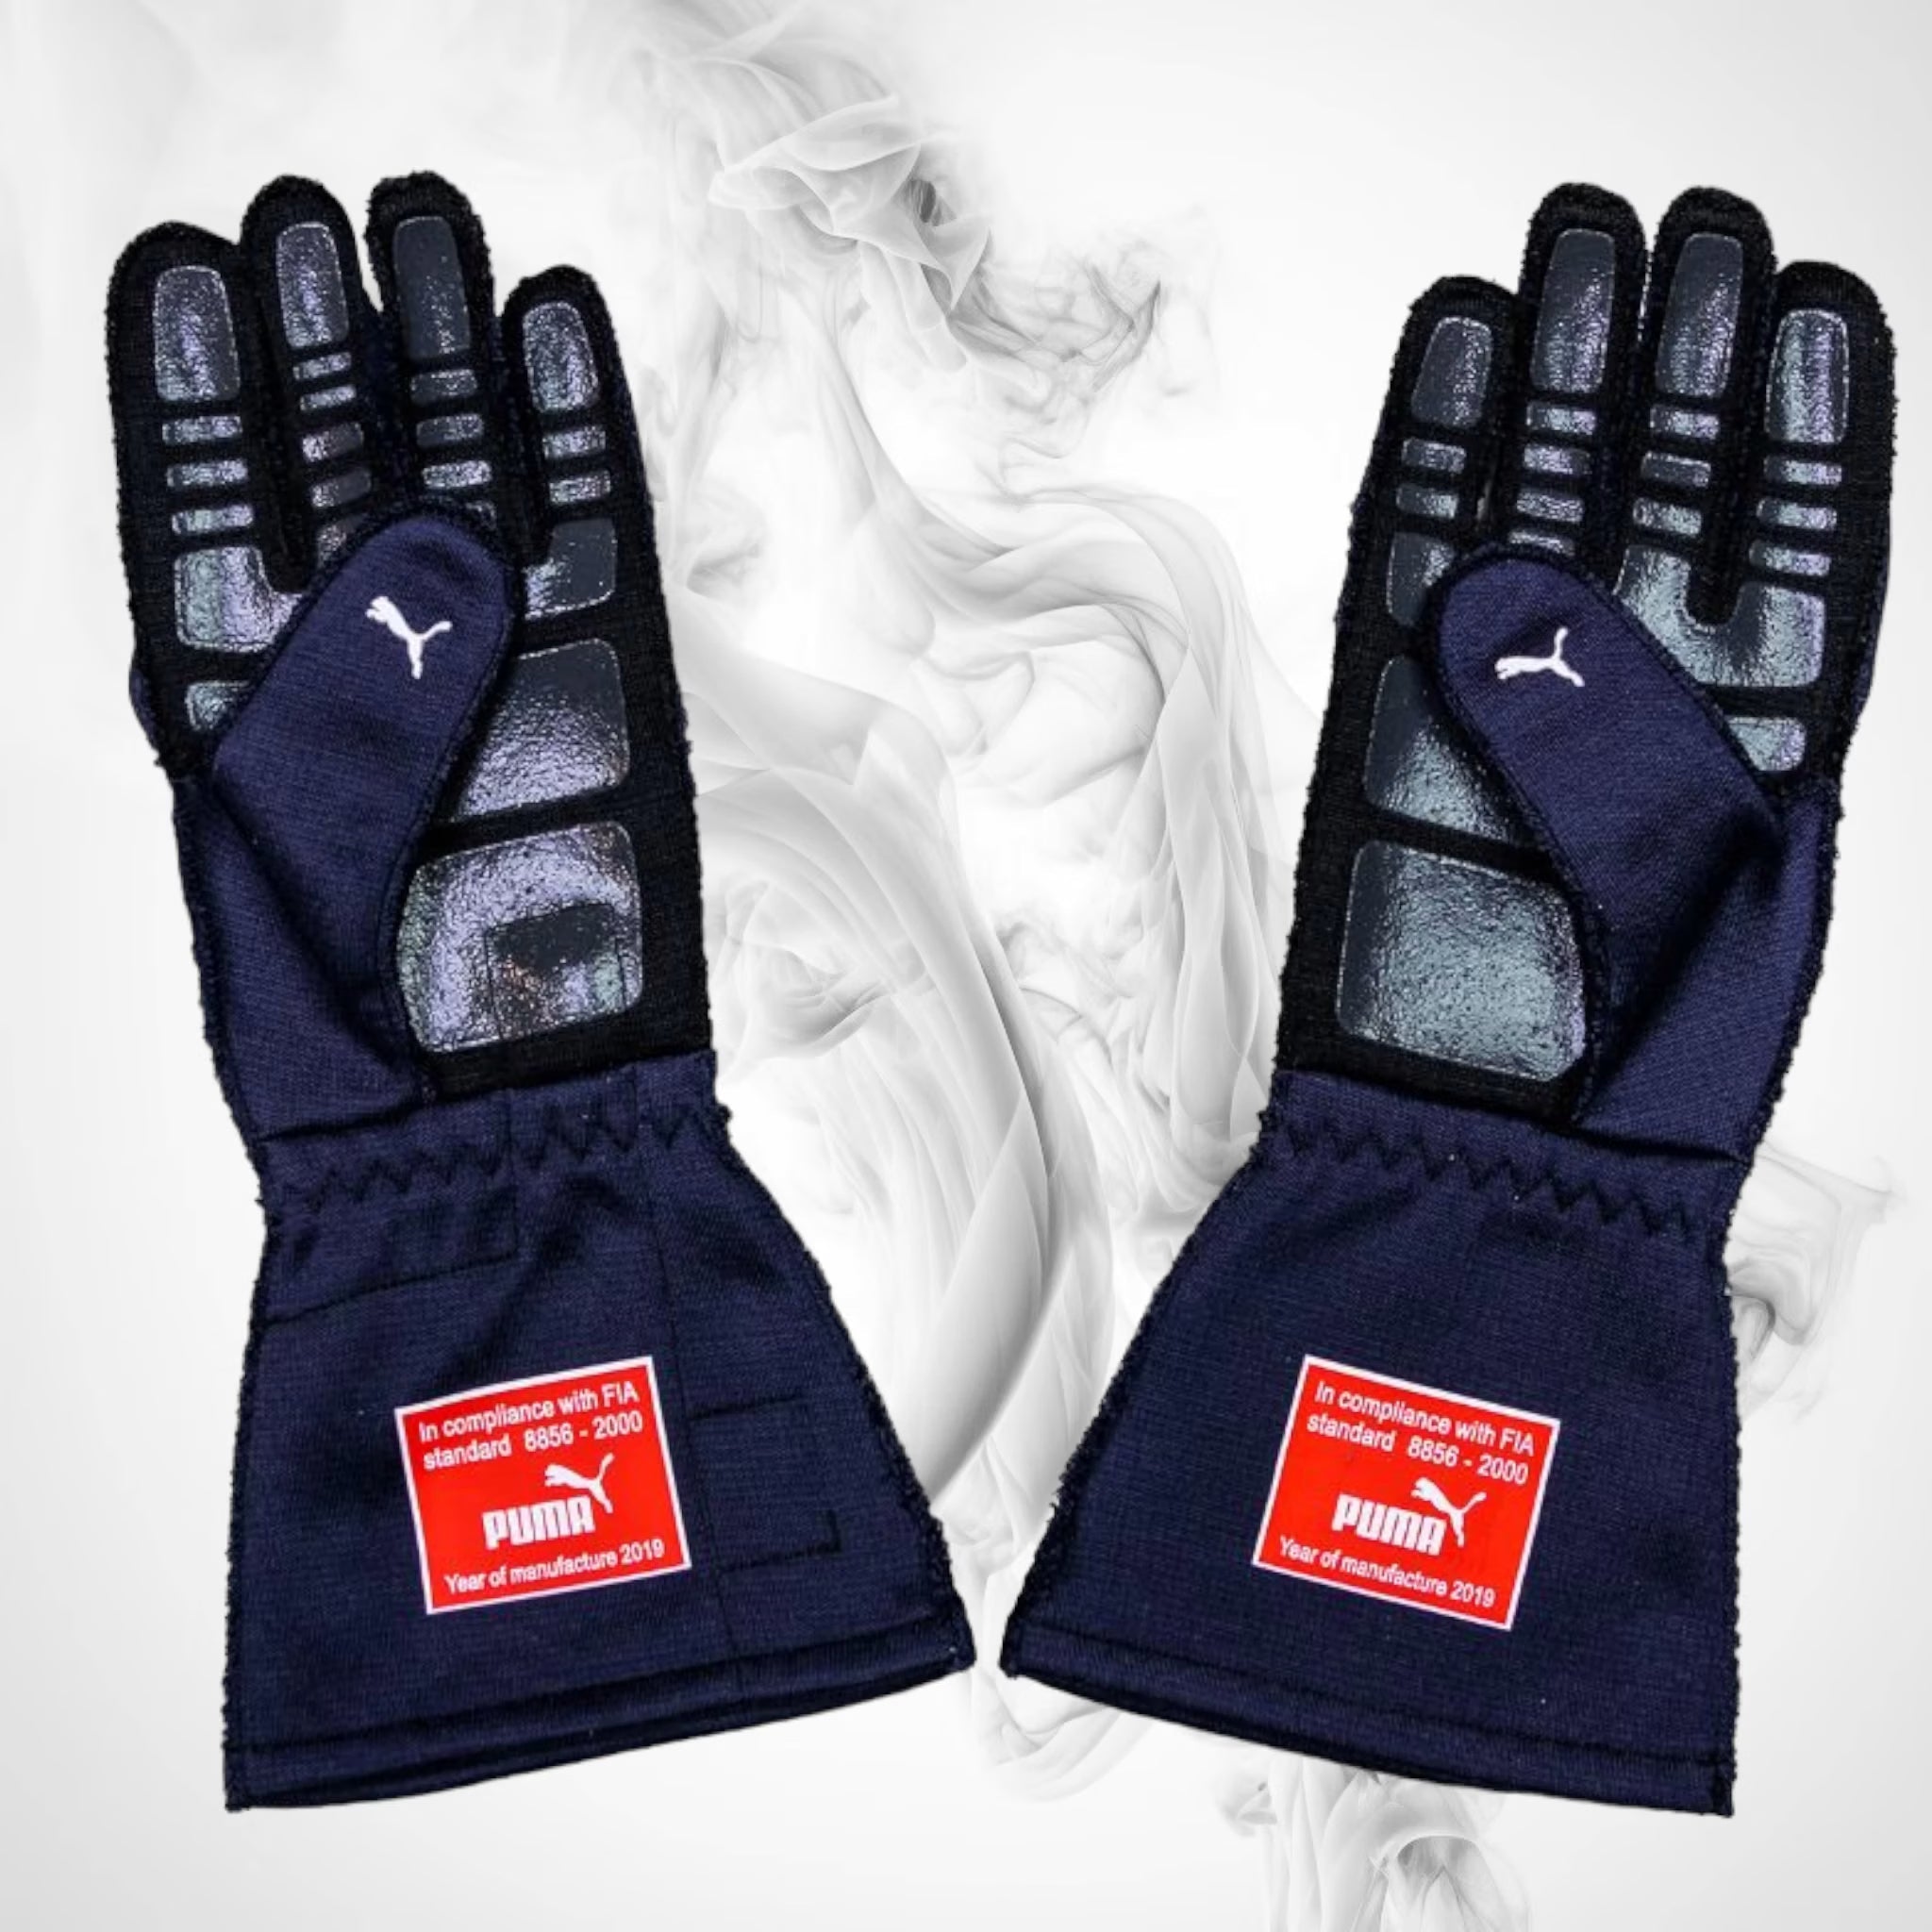 Matar Presunción Tengo una clase de ingles 2019 Pierre Gasly Race Red Bull Racing F1 Gloves – DASH RACEGEAR